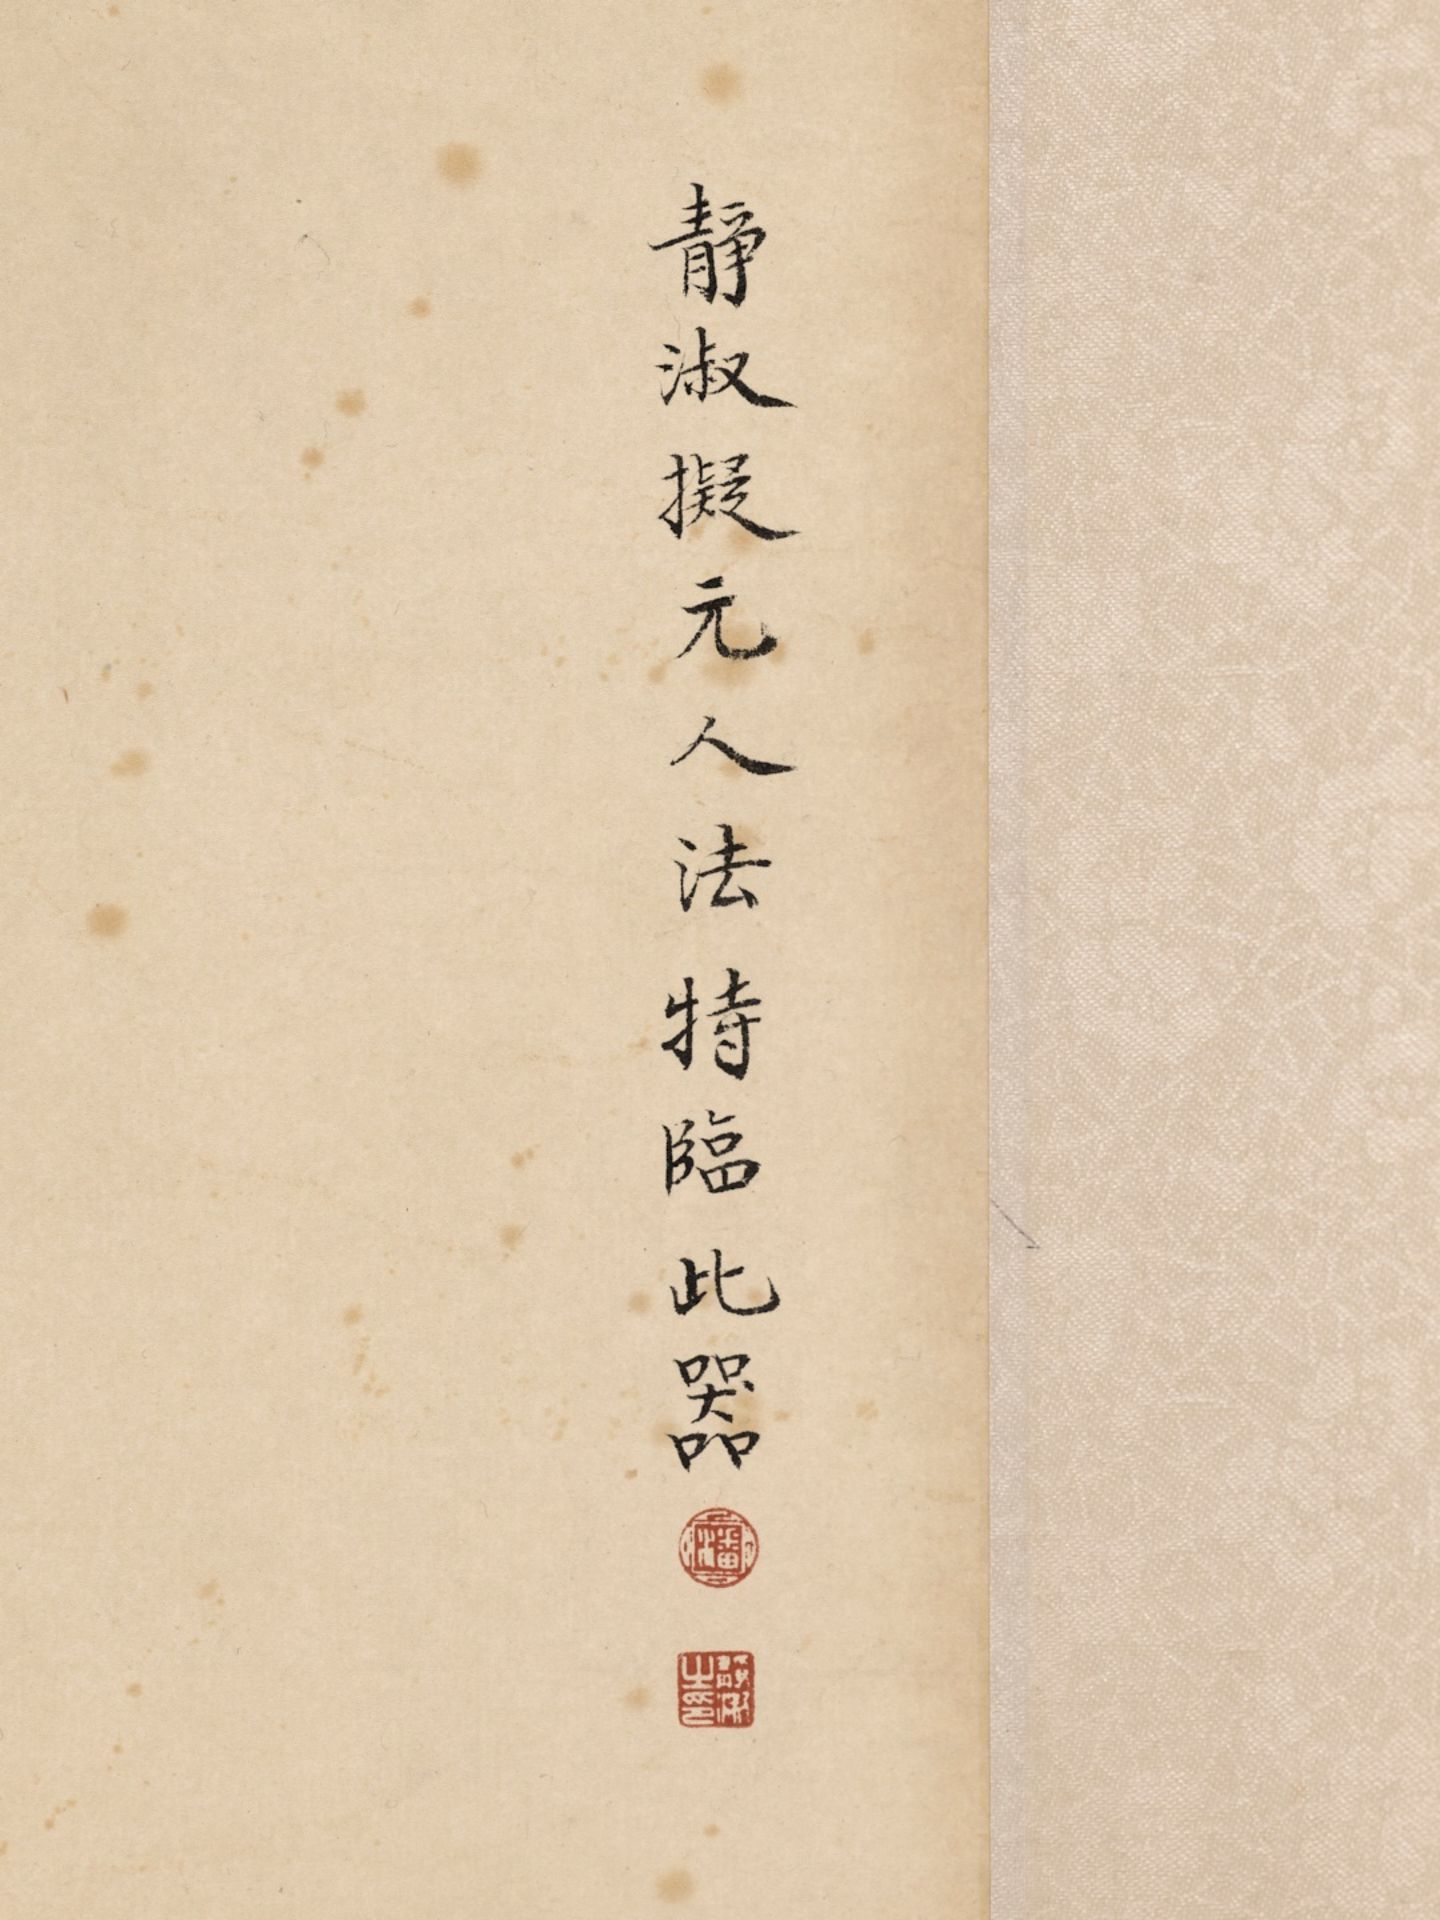 BUTTERFLIES, FLOWERS, SCEPTER, AND VASE', BY LU XIAOMAN, CHEN XIAOCUI, XIE YUEMEI, AND PAN JINGSHU - Bild 16 aus 24